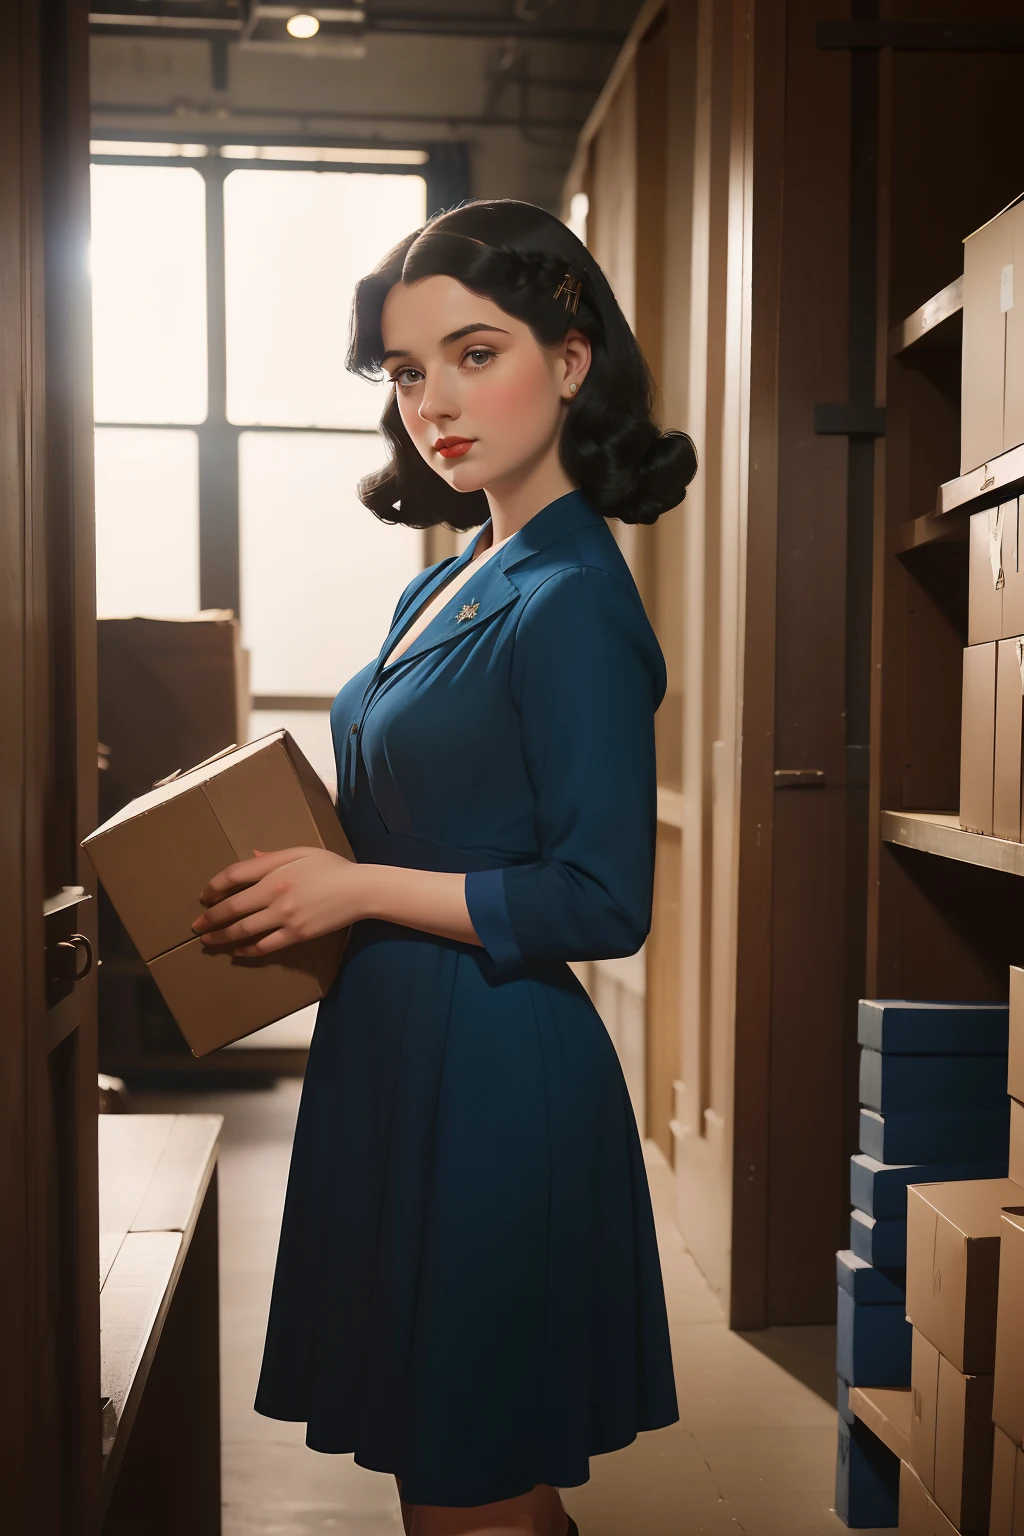 年: 1946. 地點: 華盛頓. 拉斐爾前派黑髮、藍裙子的年輕女子, 在裝滿箱子的倉庫裡, 偷偷翻閱秘密文件 ((20 世紀 40 年代的衣服)) ((1940年代髮型)) ((風格 "奧米特")) ((電影風格))